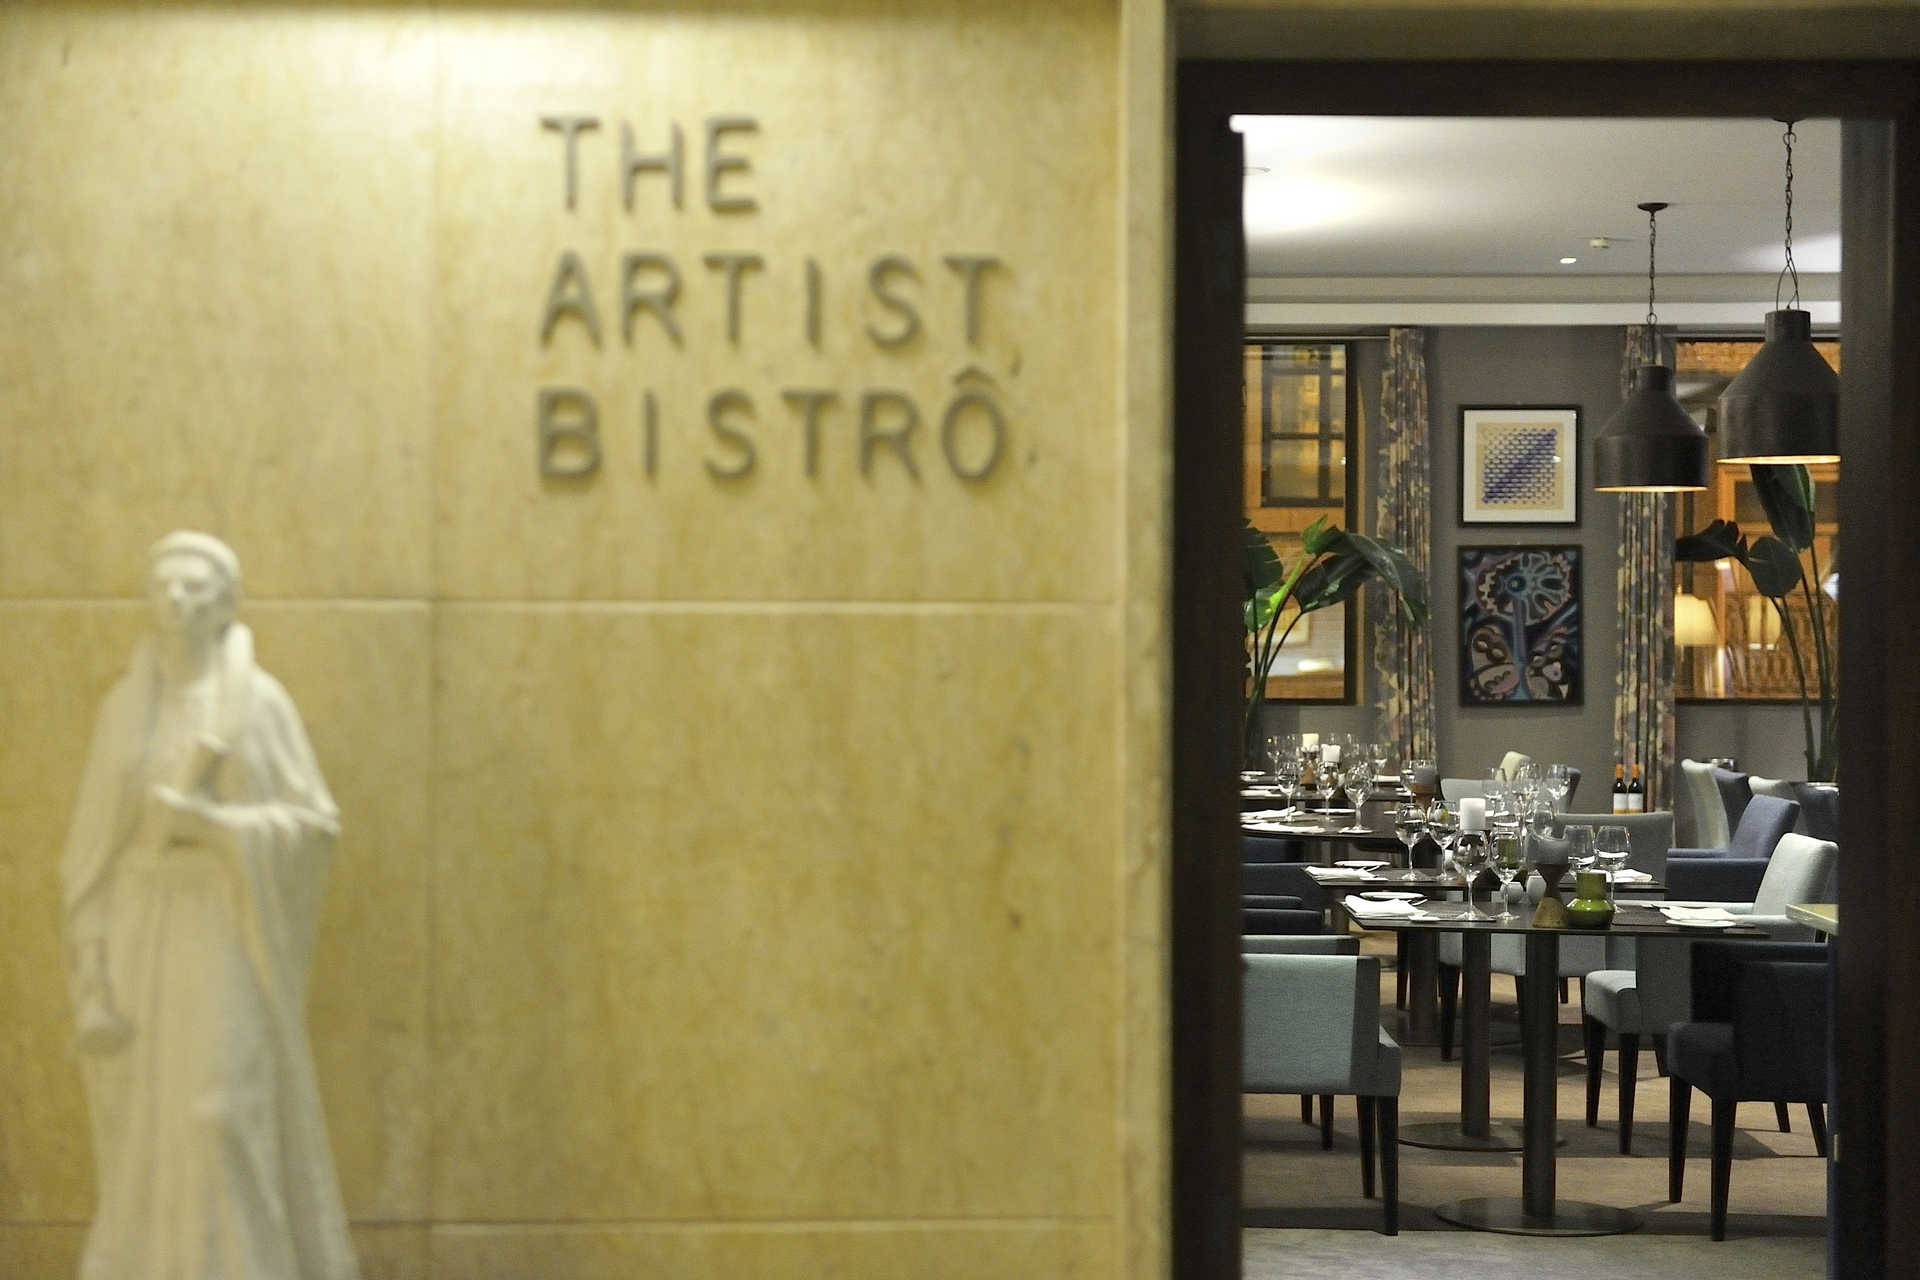 Restaurante The Artist Bistrôt